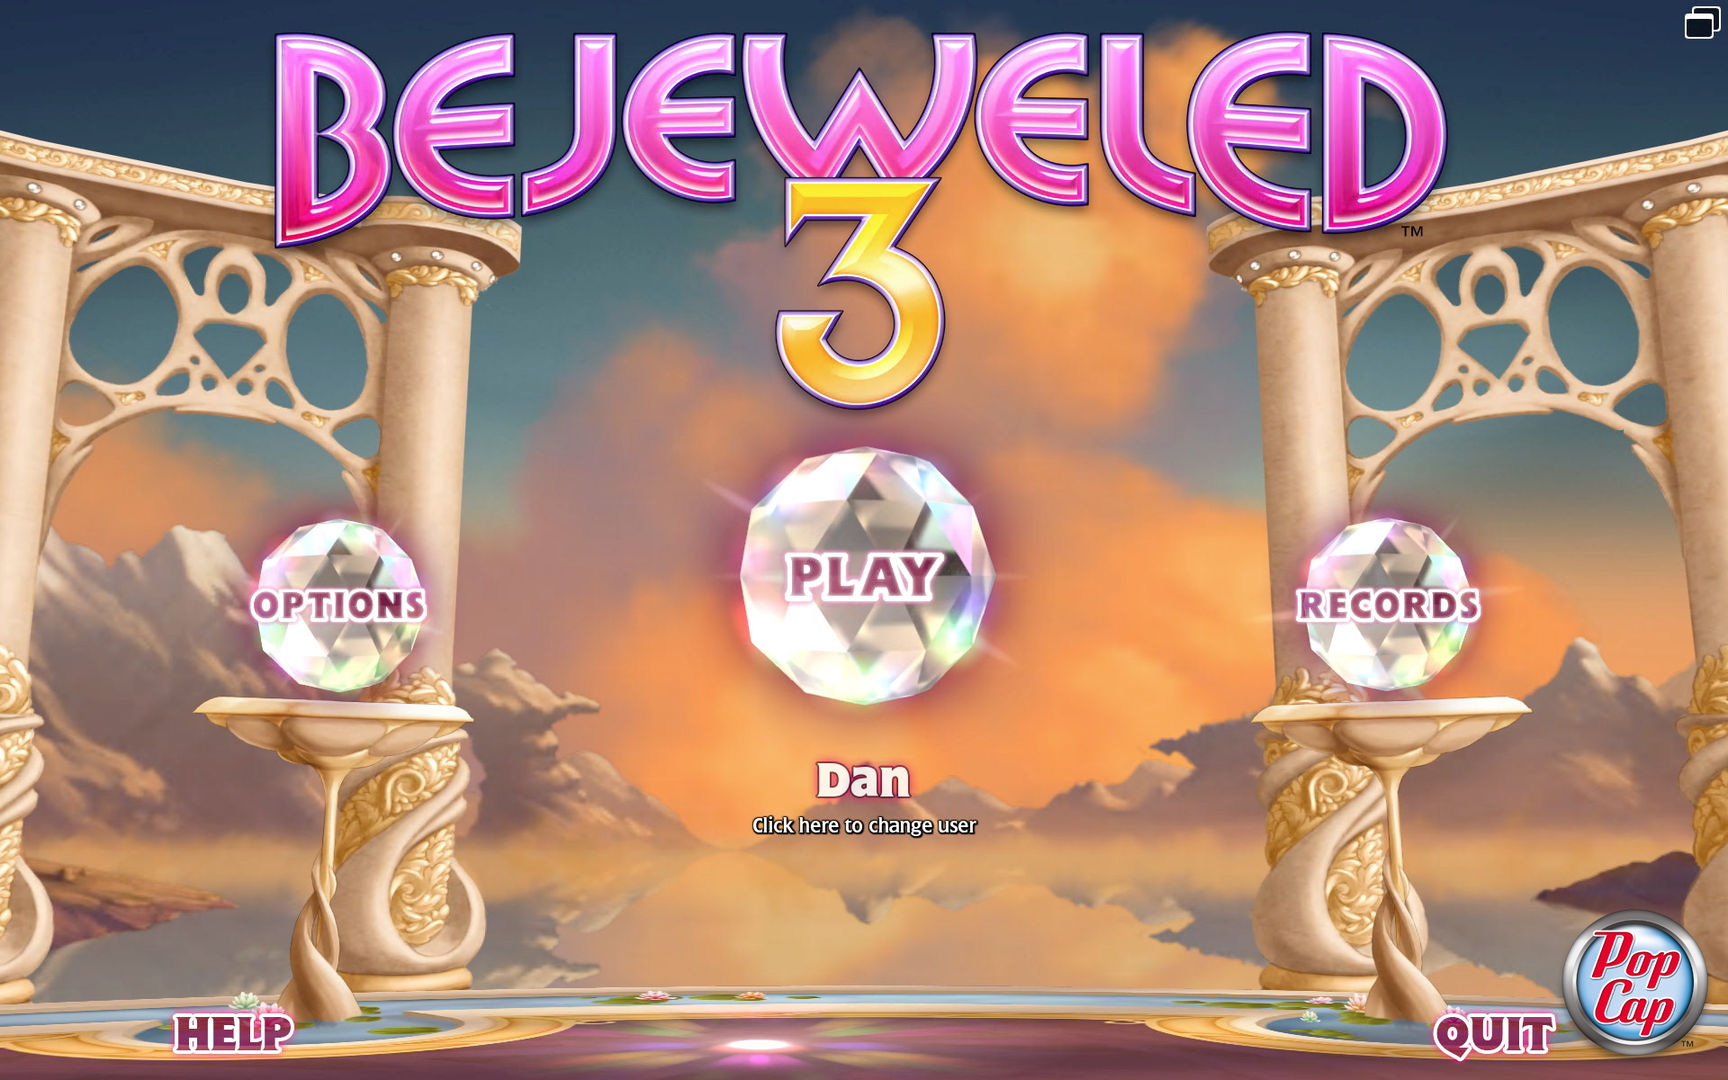 Buy Bejeweled 3